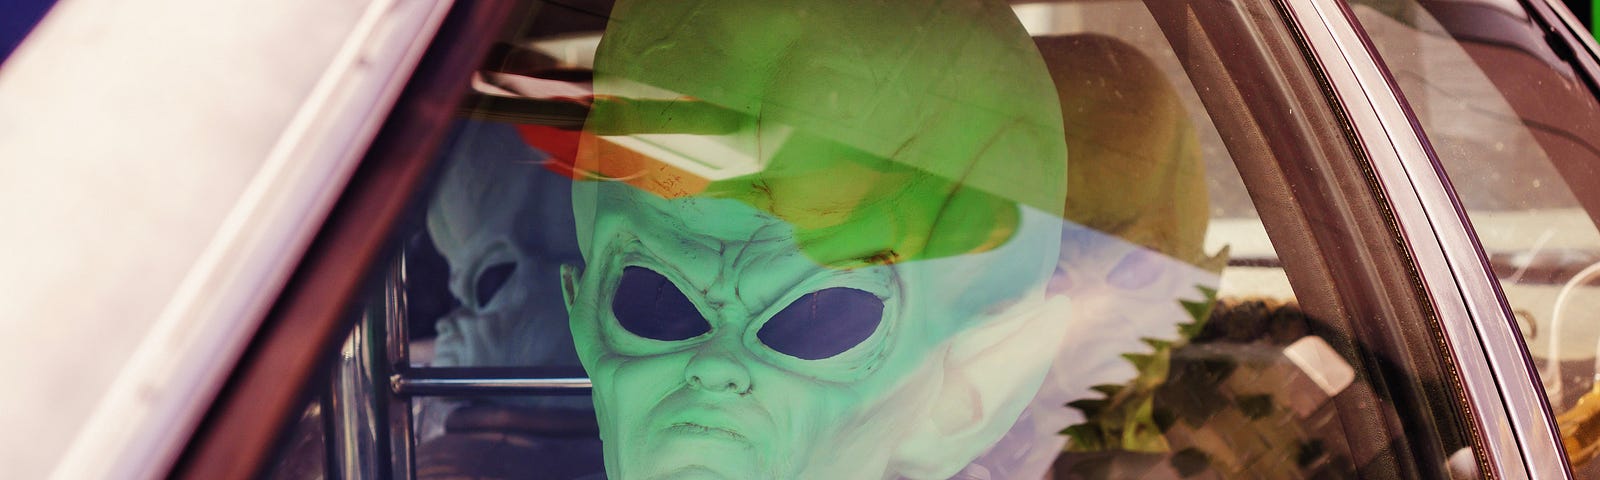 An alien costume driving a car